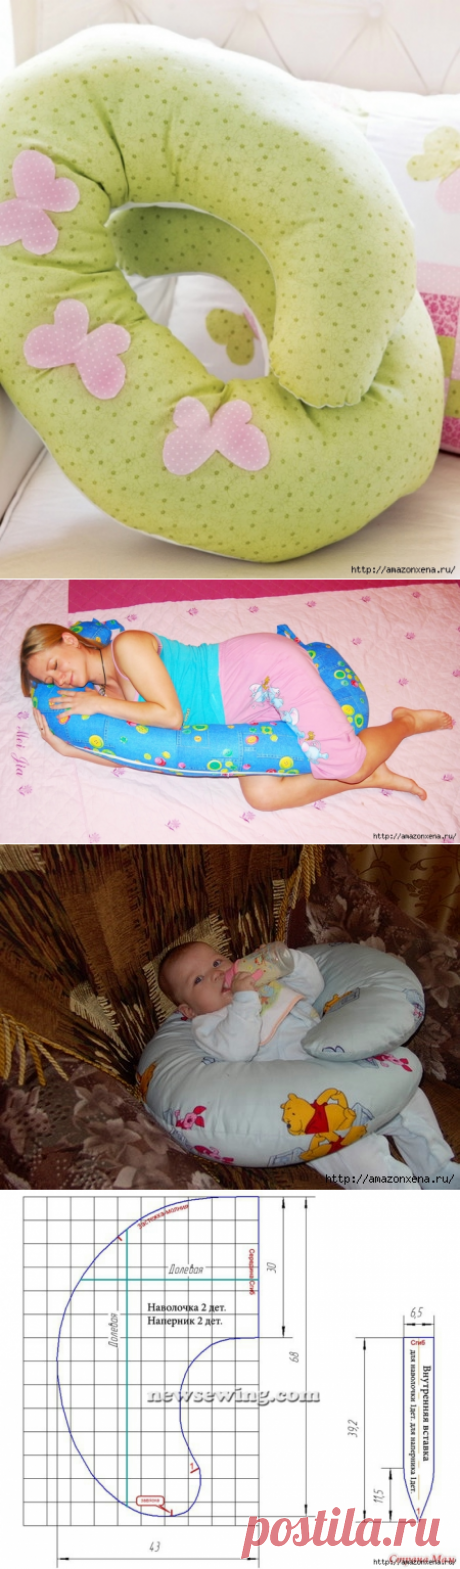 Шьем подушку для кормления малыша. Выкройка и маленький мк